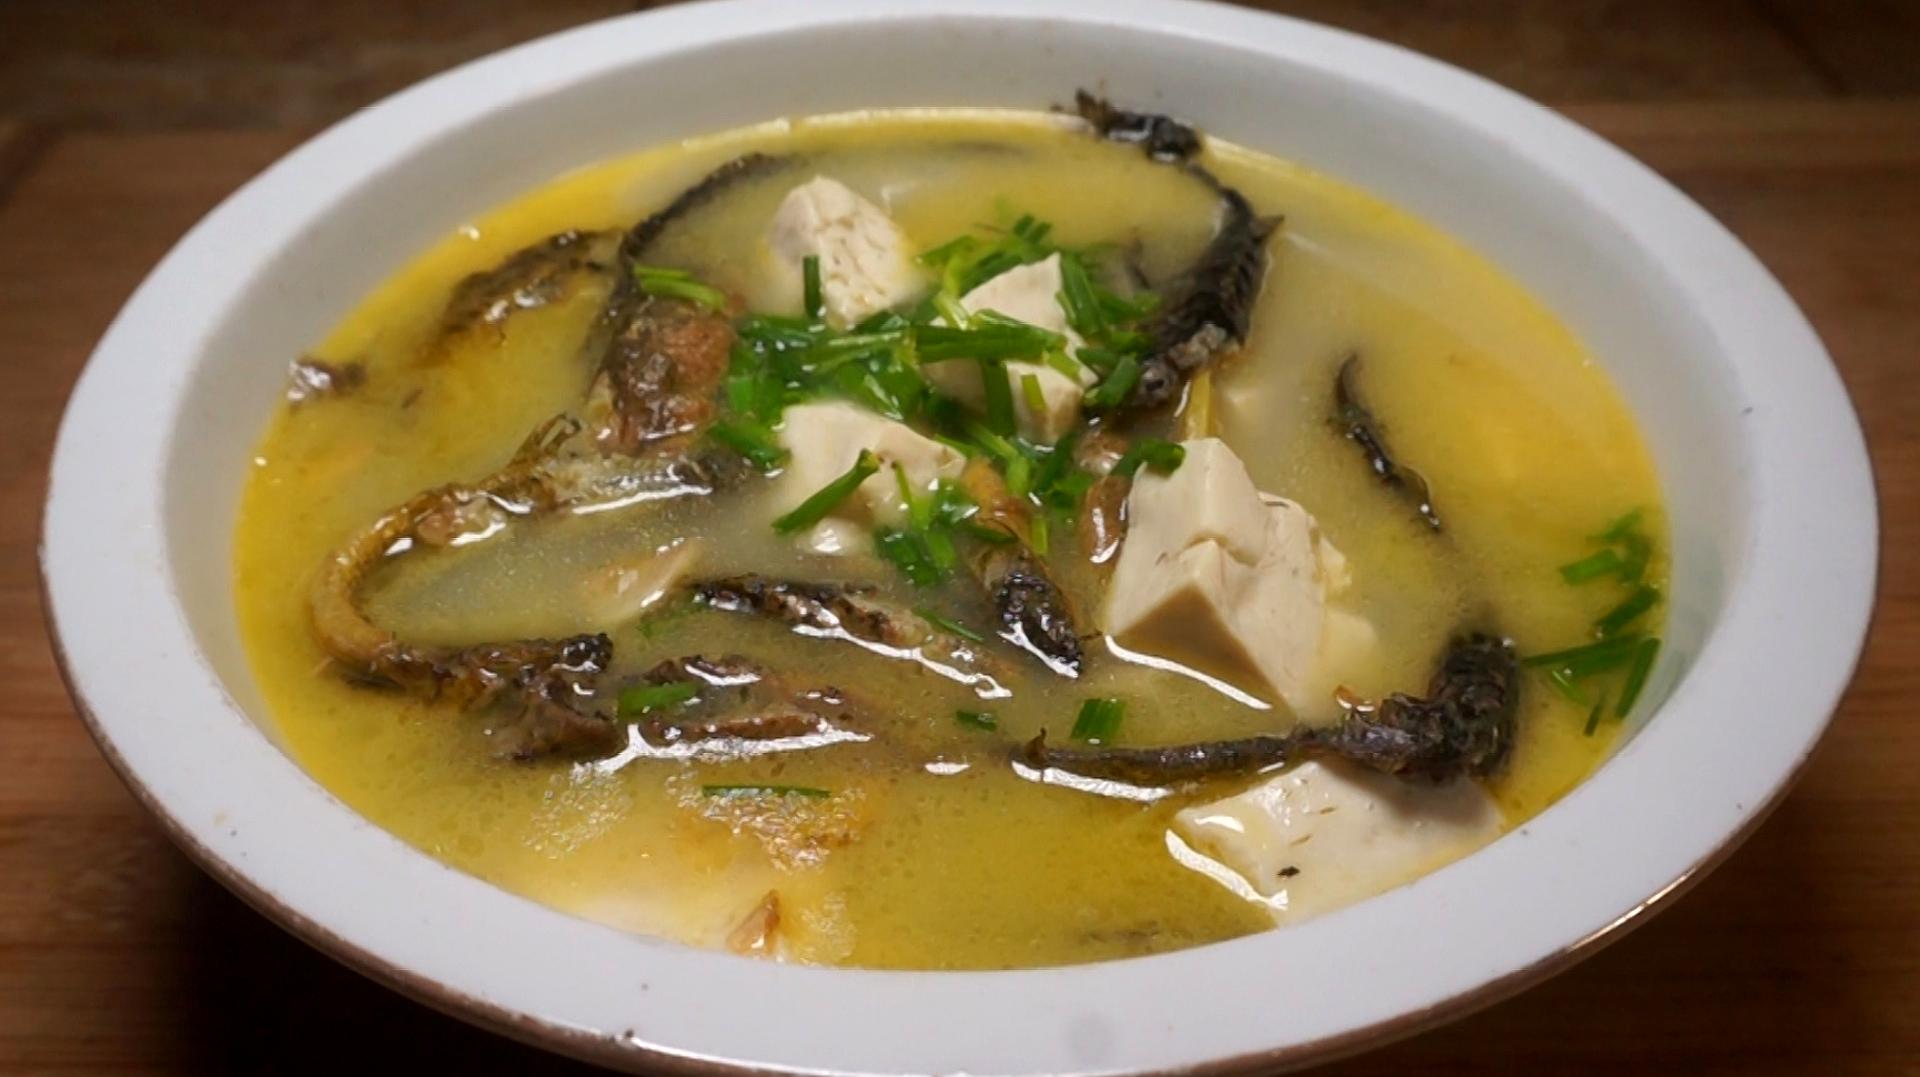 美食图片欣赏——营养美味的泥鳅菜肴